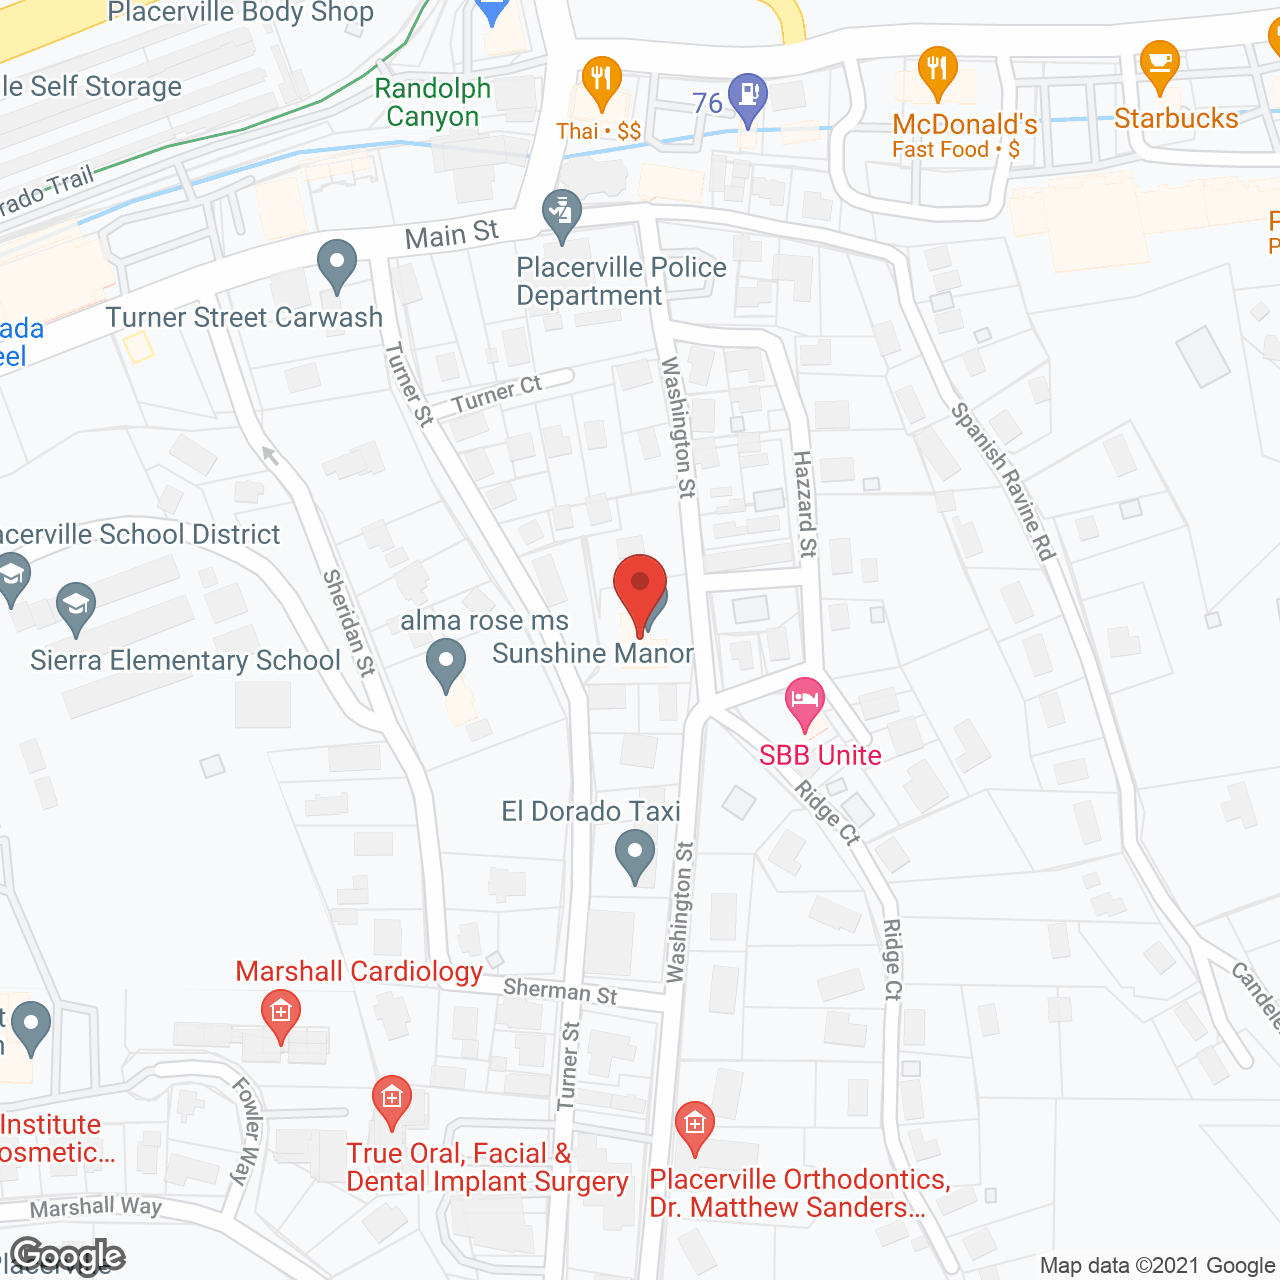 Sunshine Manor in google map